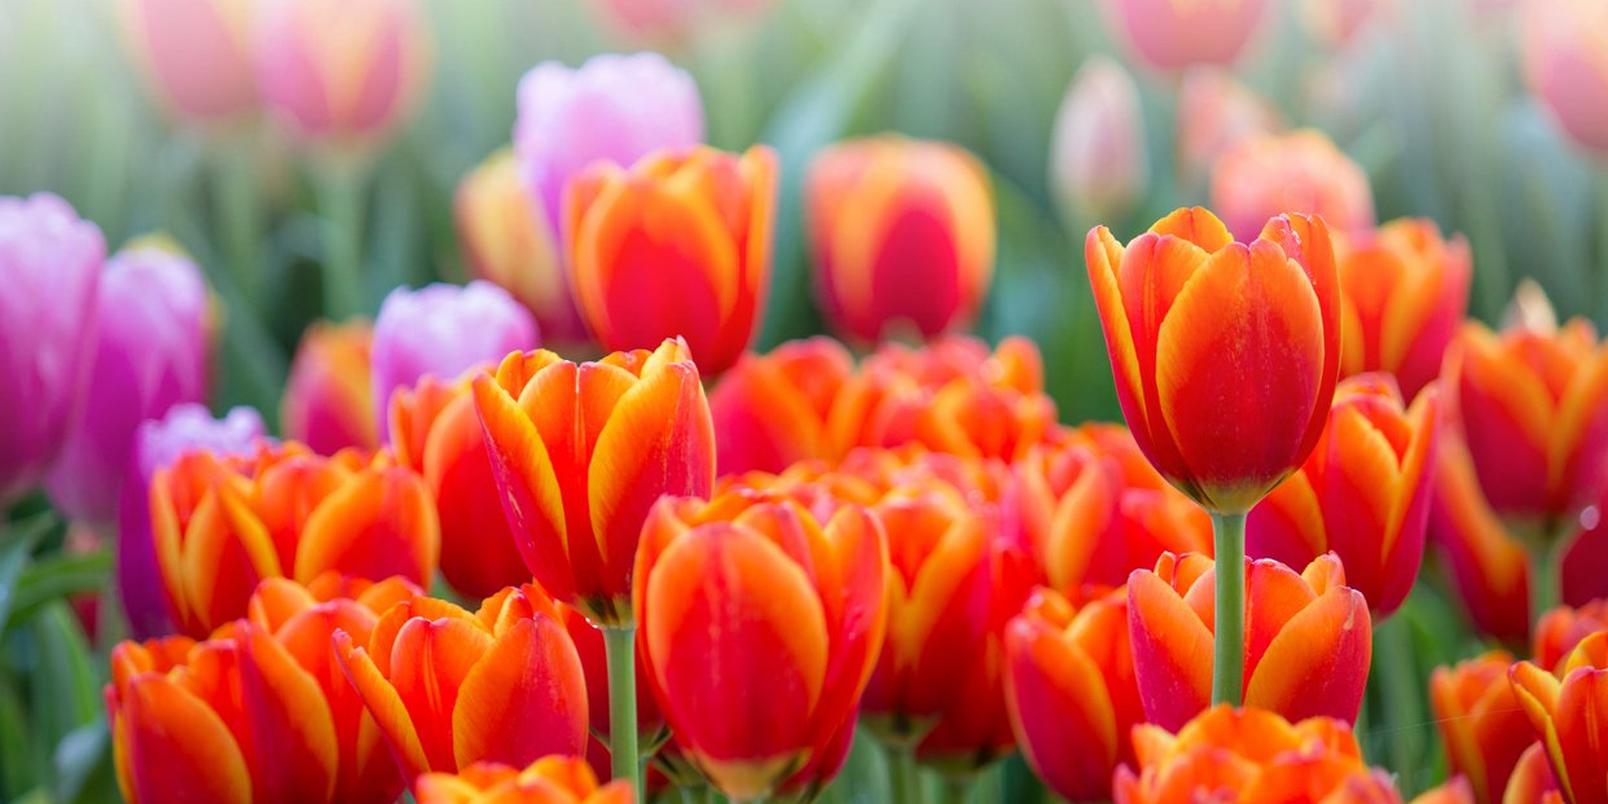 tulips-orange-fields